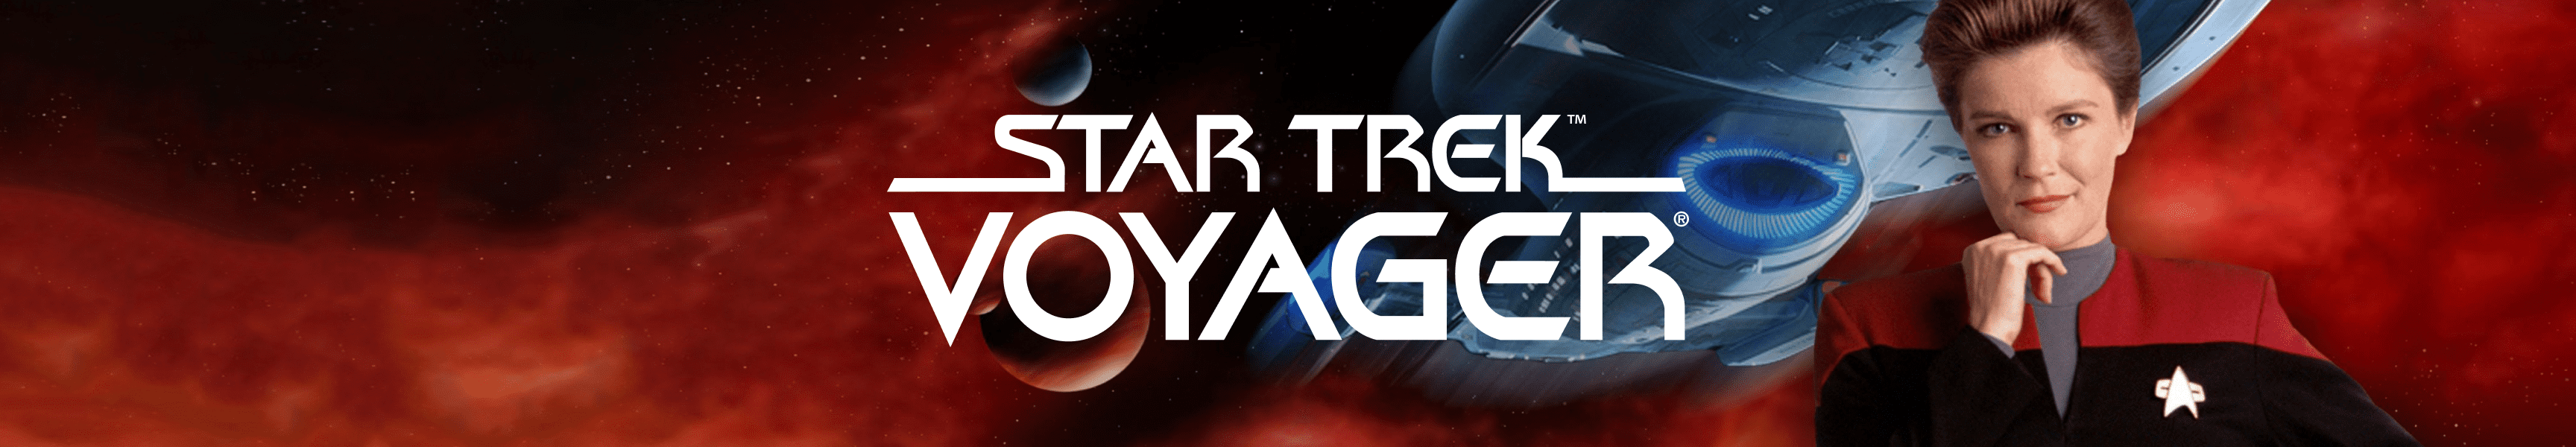 Star Trek: Voyager Gold 25 Logo Black Mug